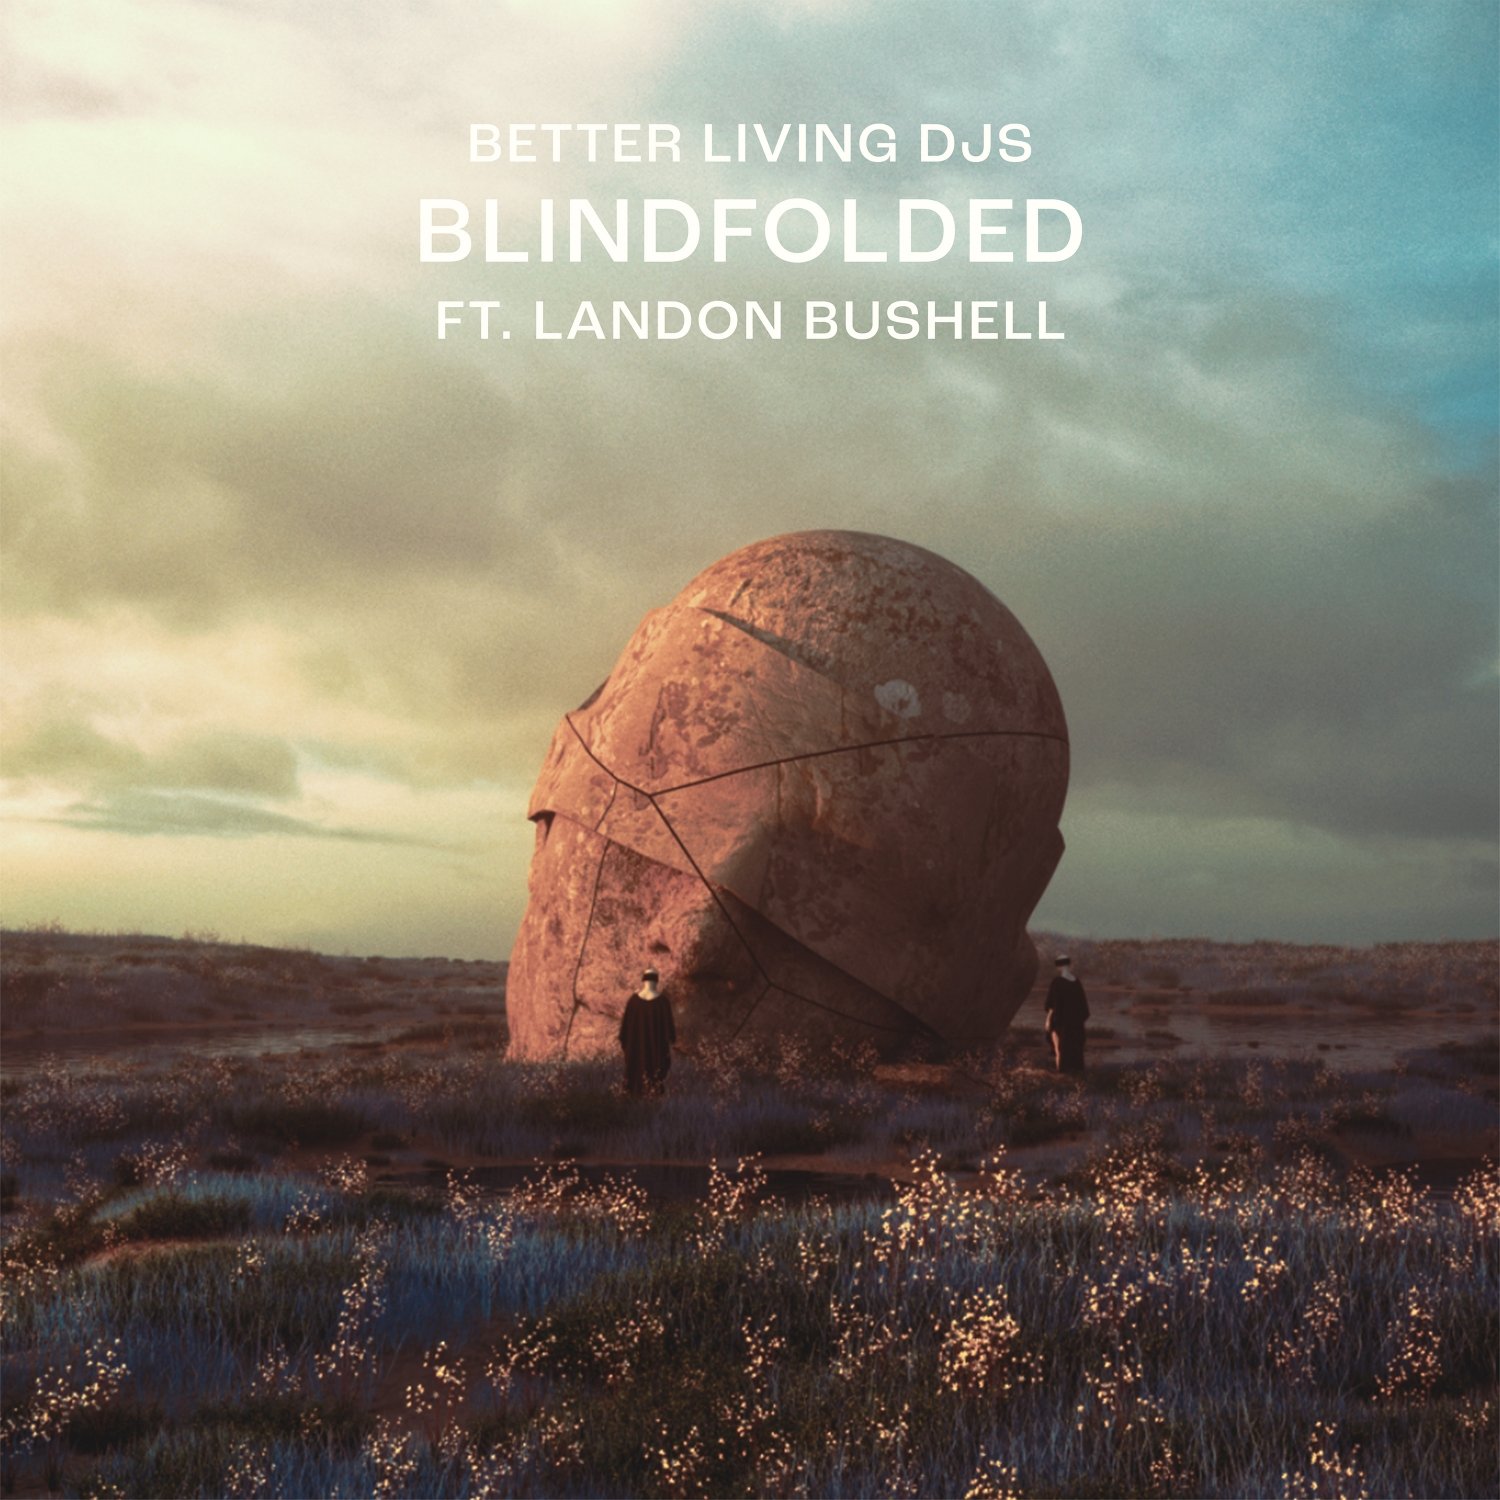 Better Living DJs FT. Landon Bushell